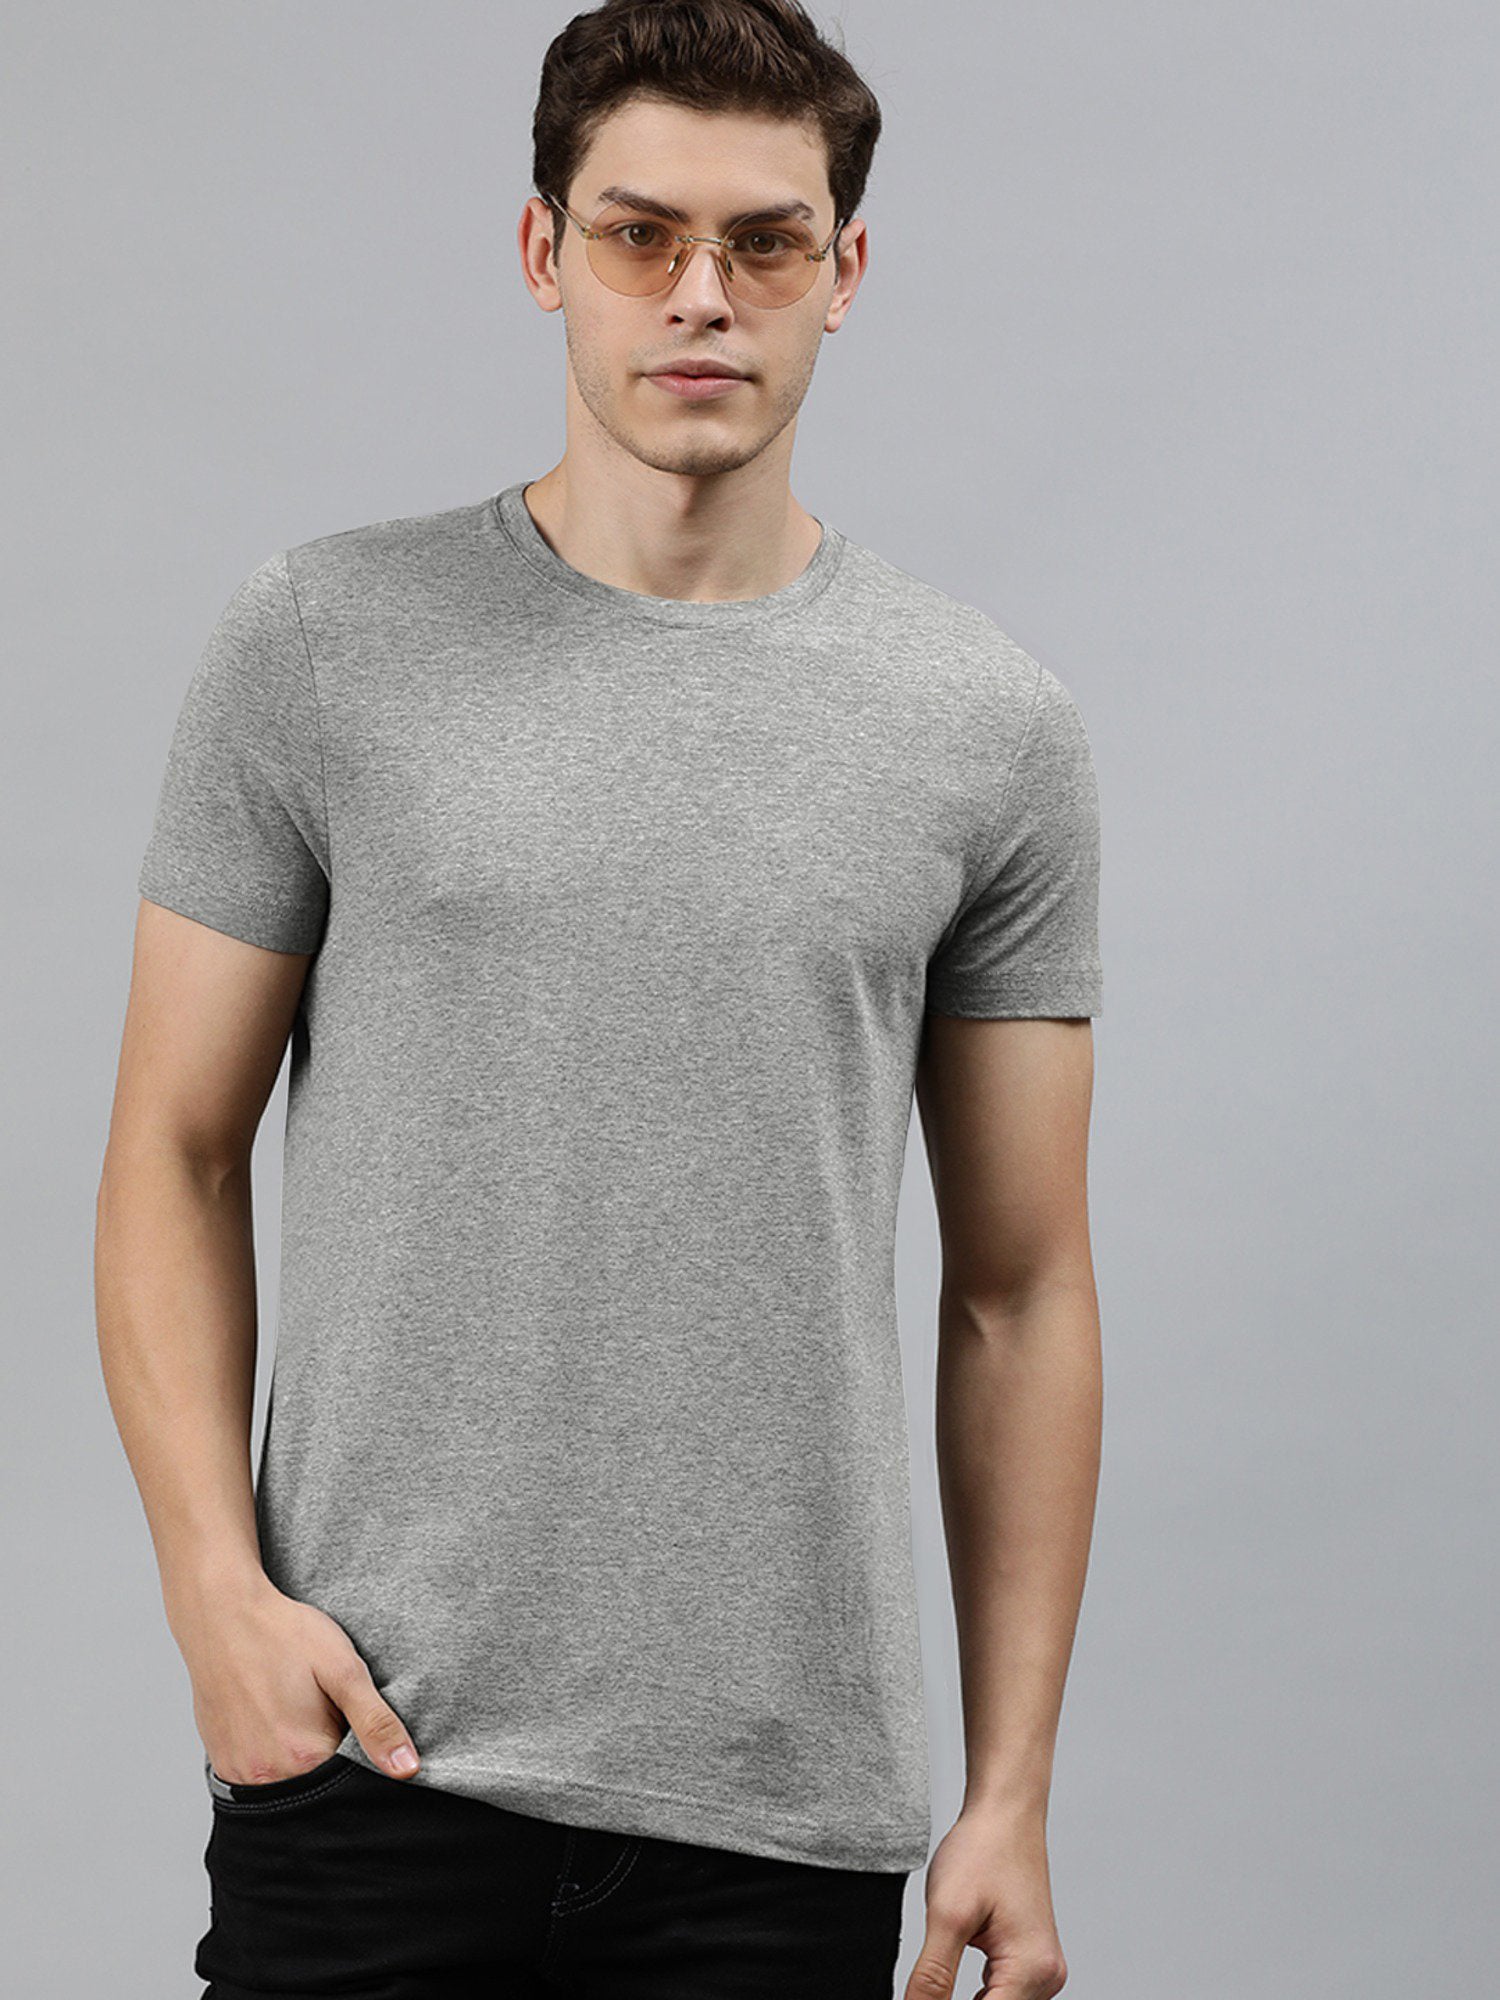 Beverly Hills Crew Neck Half Sleeve Tee Shirt For Men-Grey Melange-SP1834